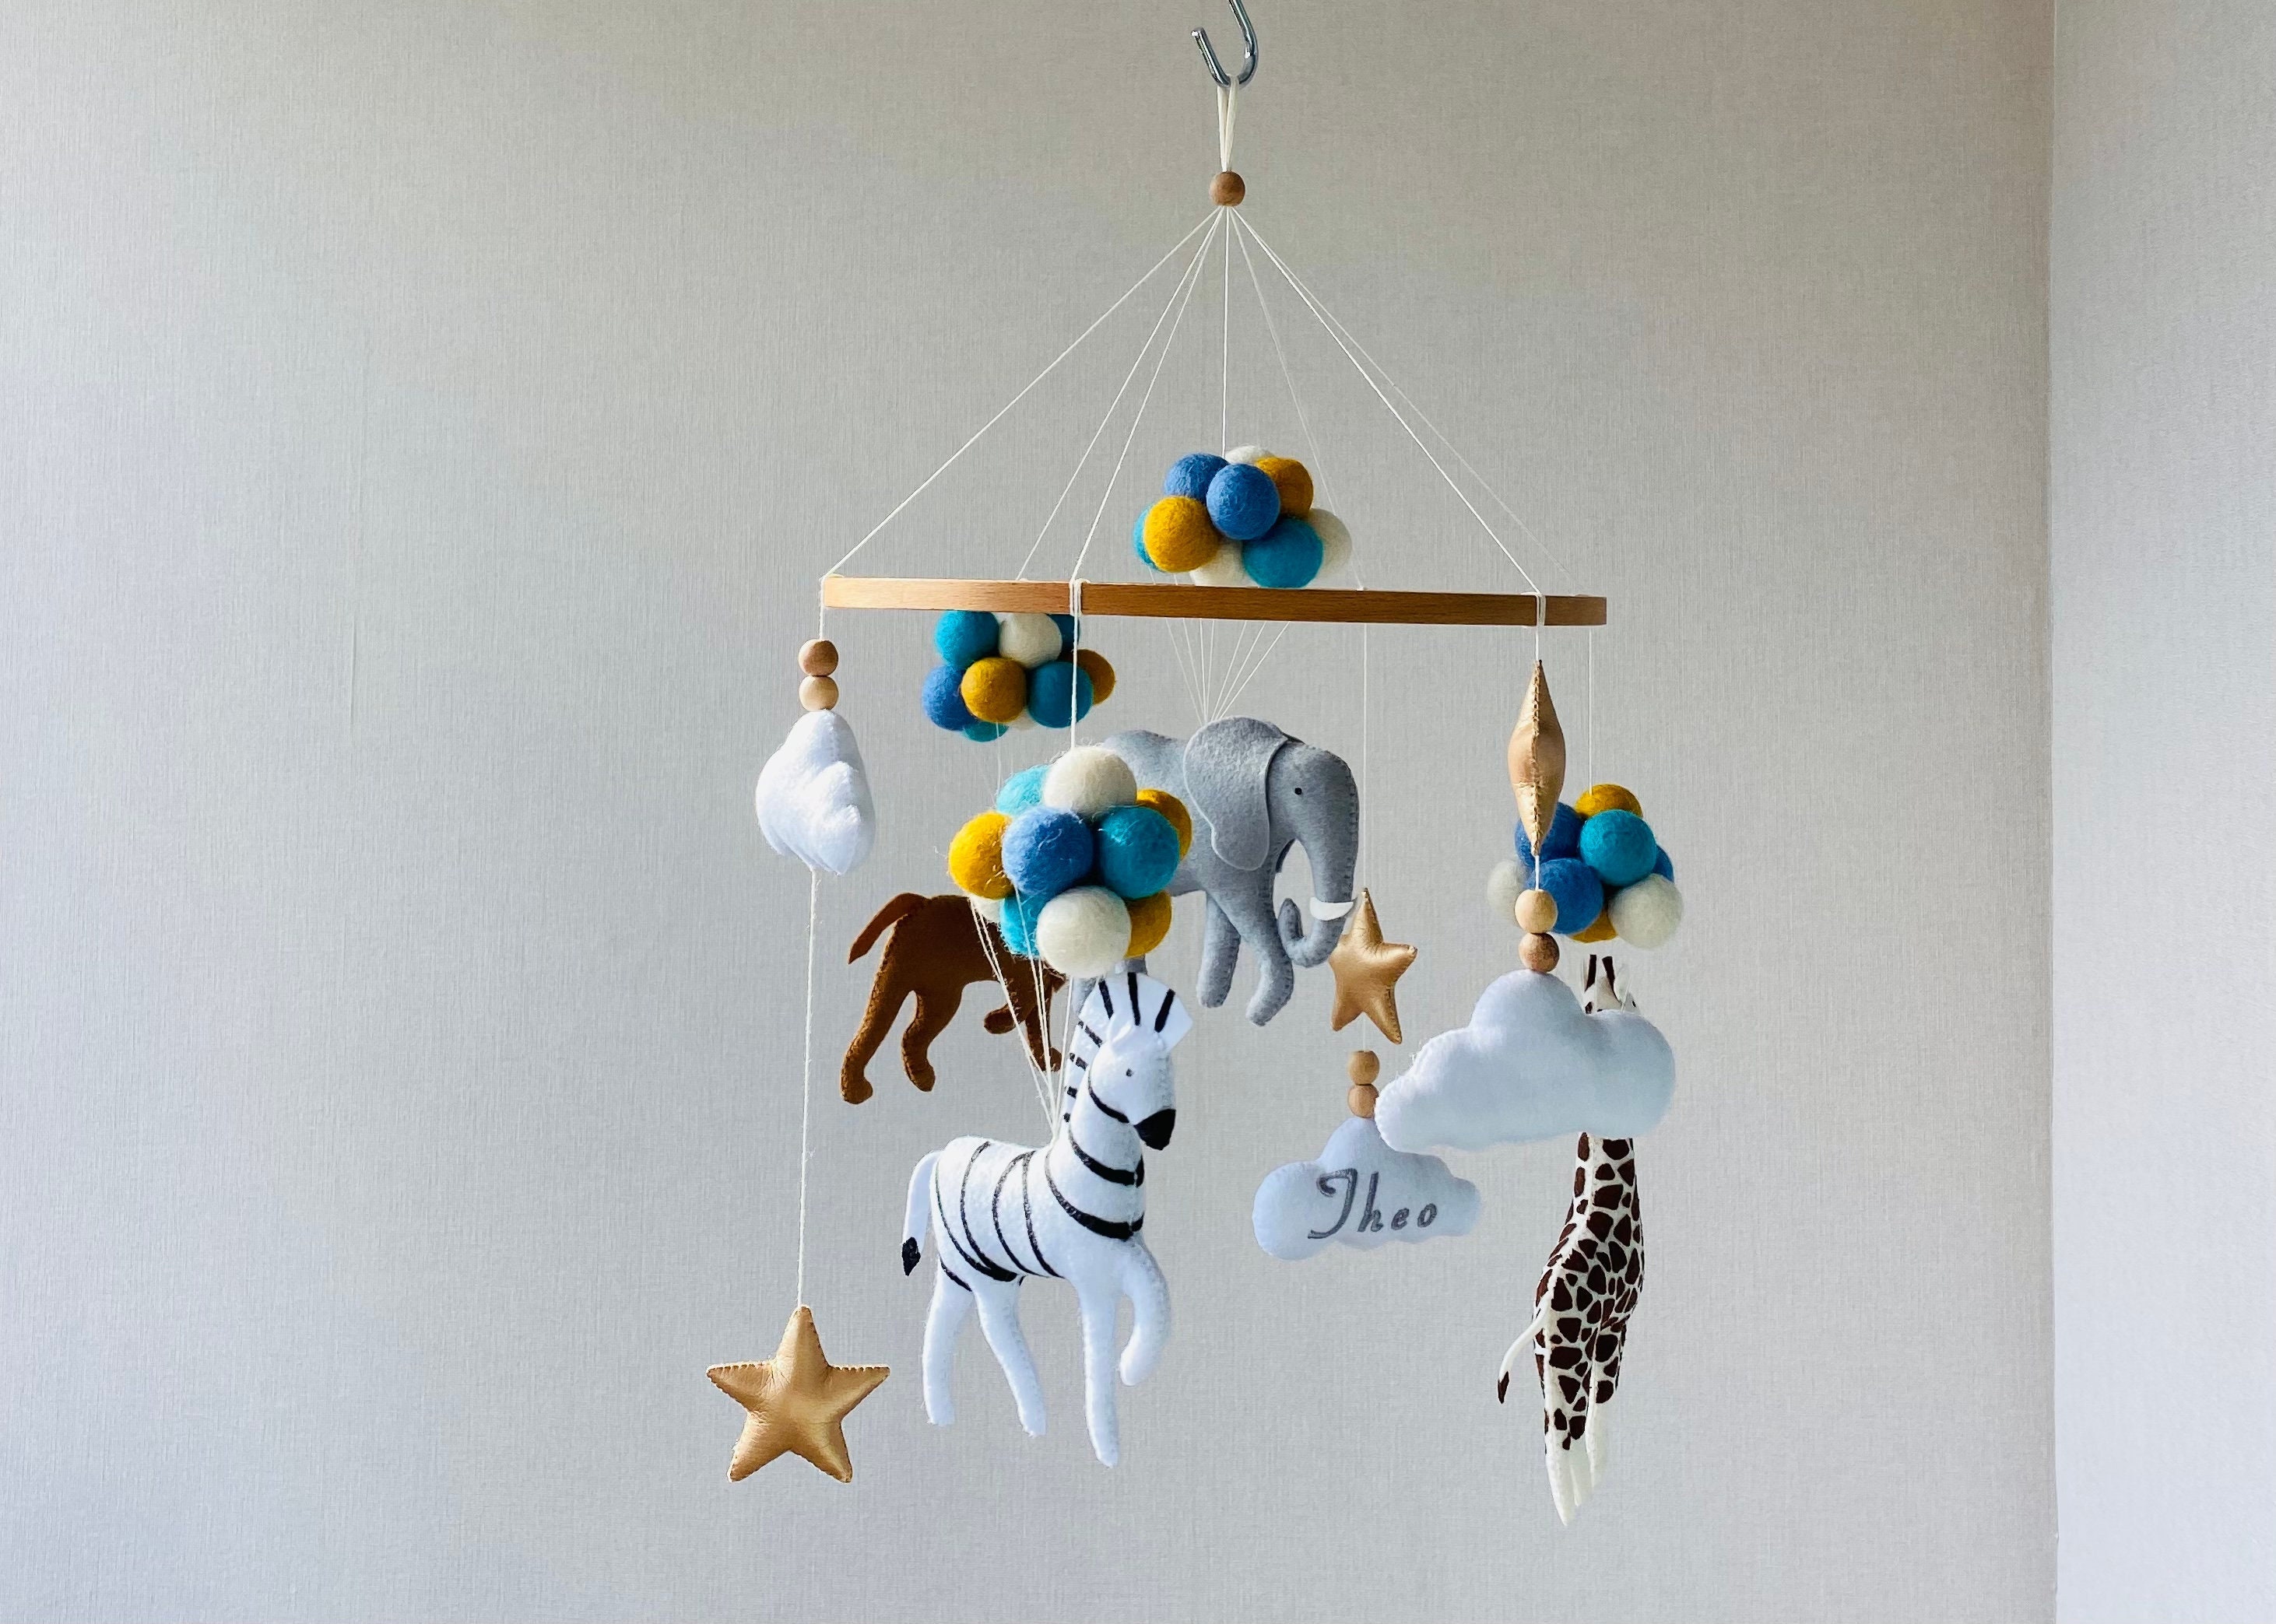 safari bébé mobile, animaux d'afrique sur ballons, crèche mobile girafe, lion, zèbre, éléphant, berceau nuages musical mobile.